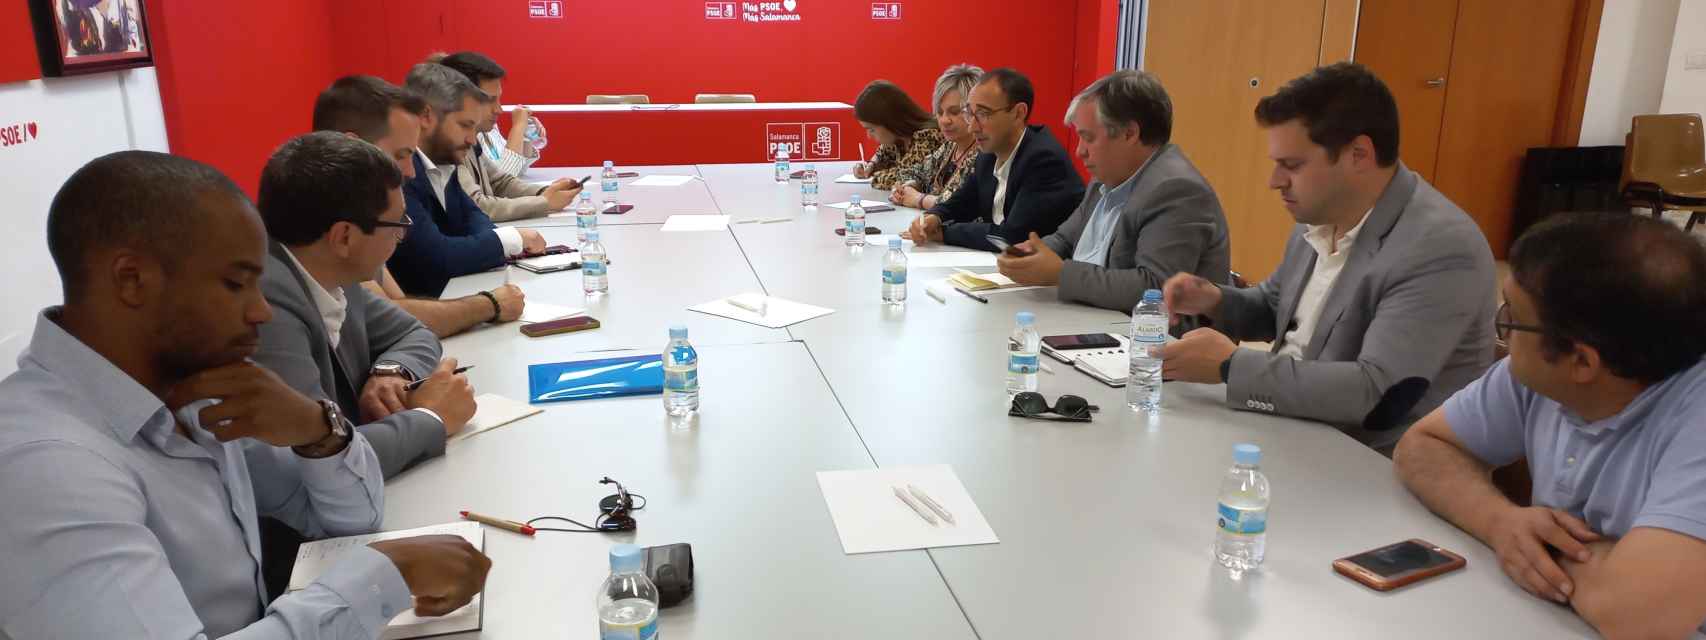 El PSOE y los socialistas de Guarda, en la reunión de Salamanca